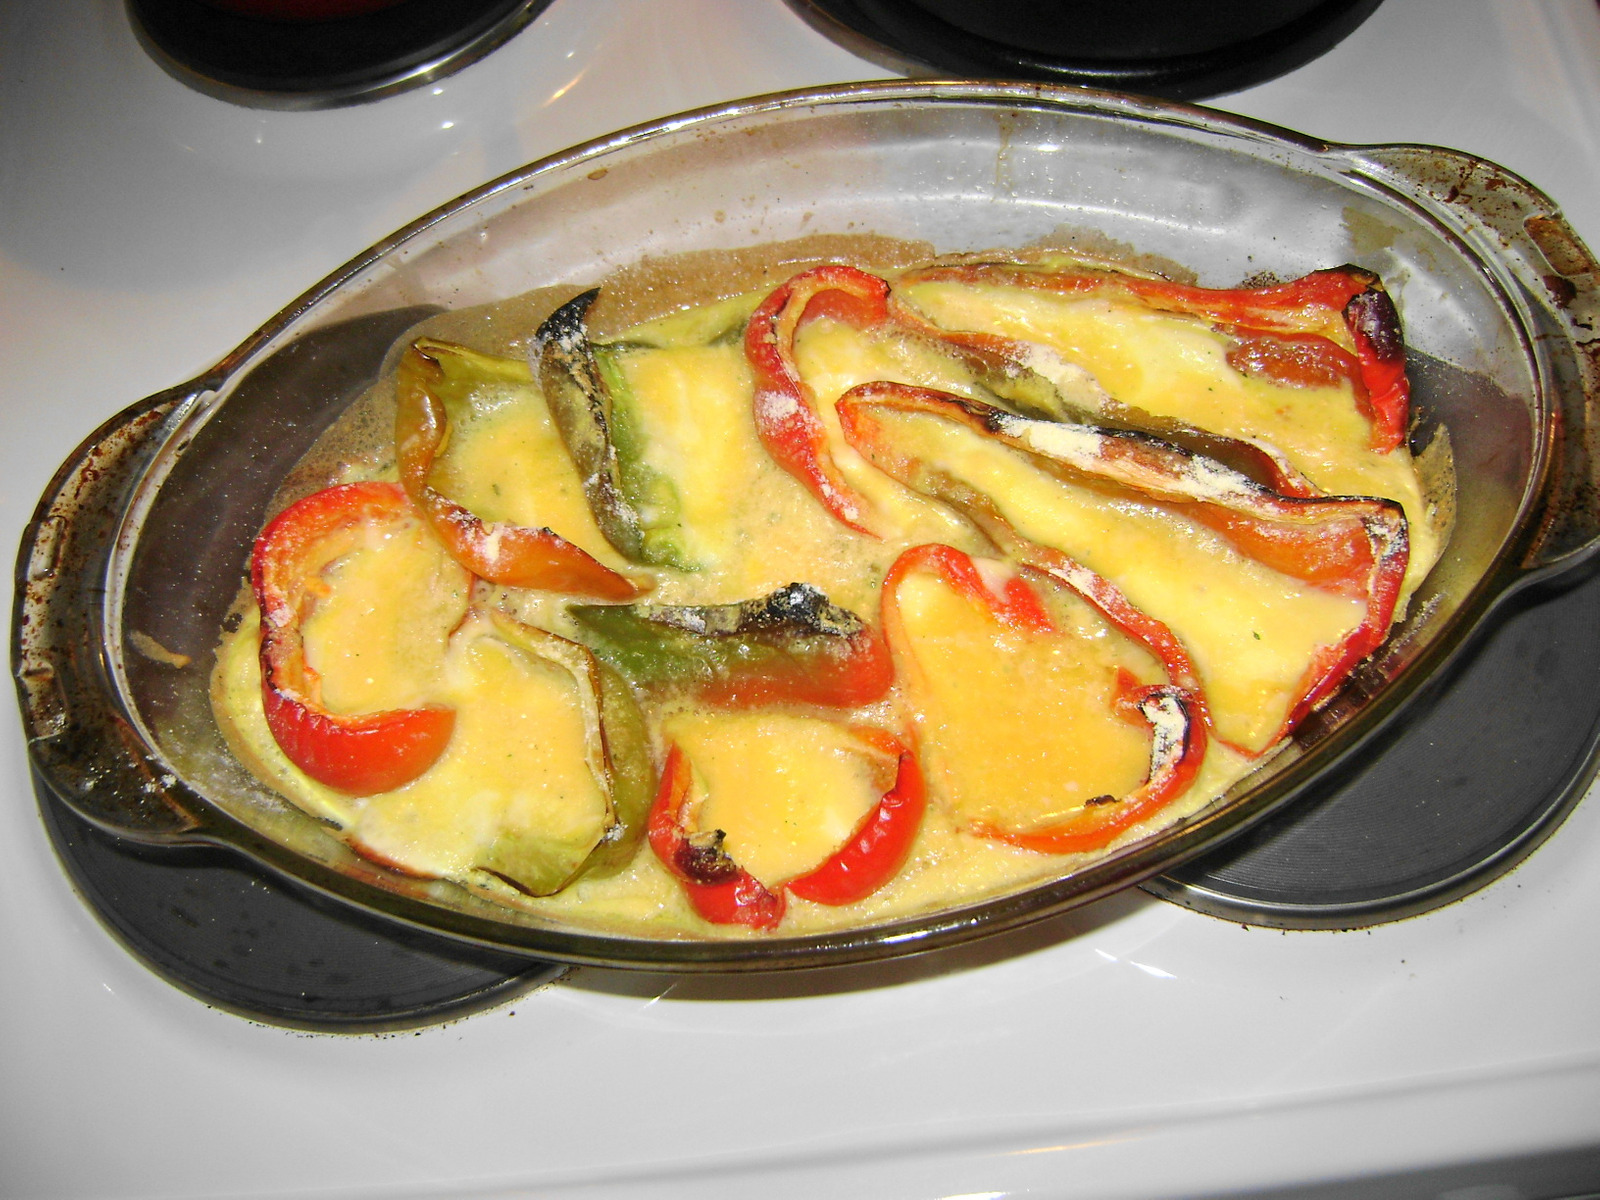 Pecene paprike sa sirom i jajima - Coolinarika